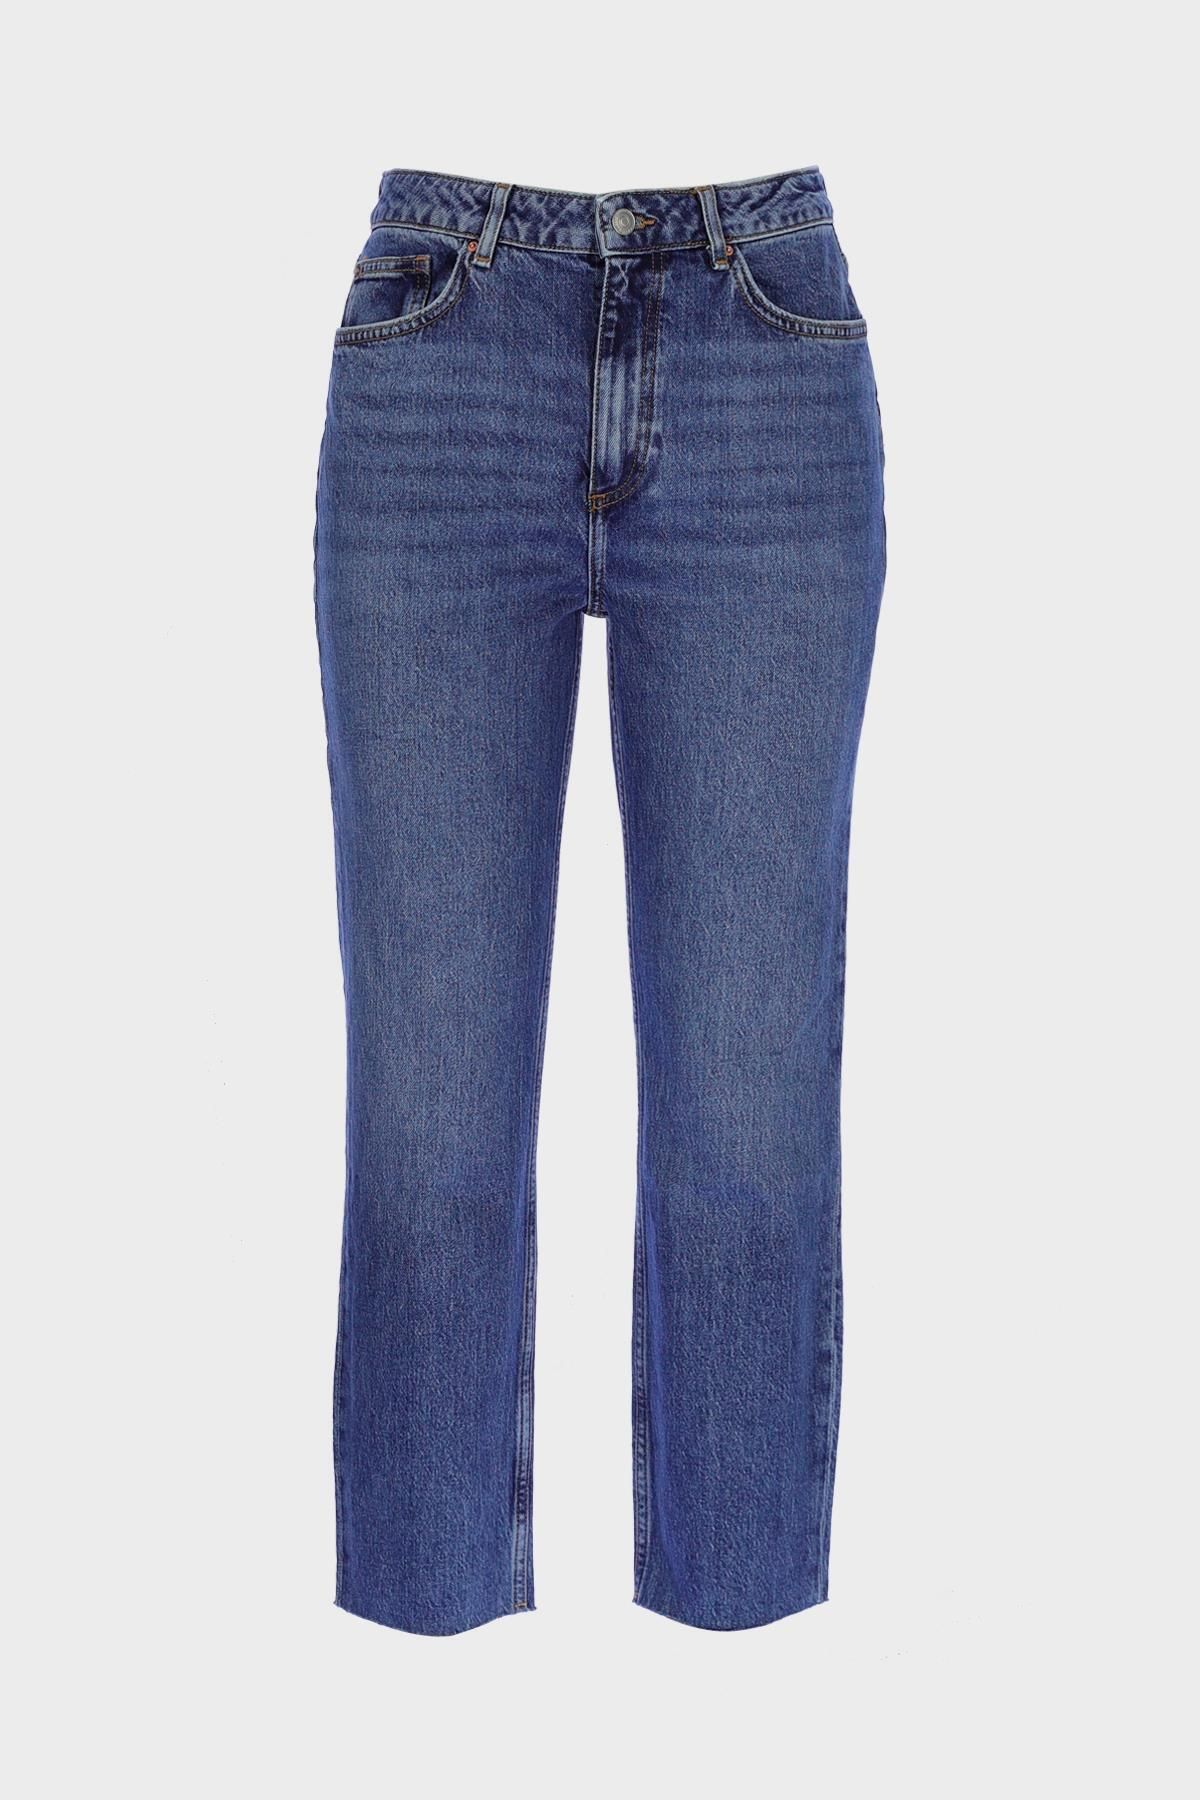 CROSS JEANS Sydney Orta Mavi Yüksek Bel Paçası Kesikli Fermuarlı Slim Straight Jean Pantolon C 4529-083